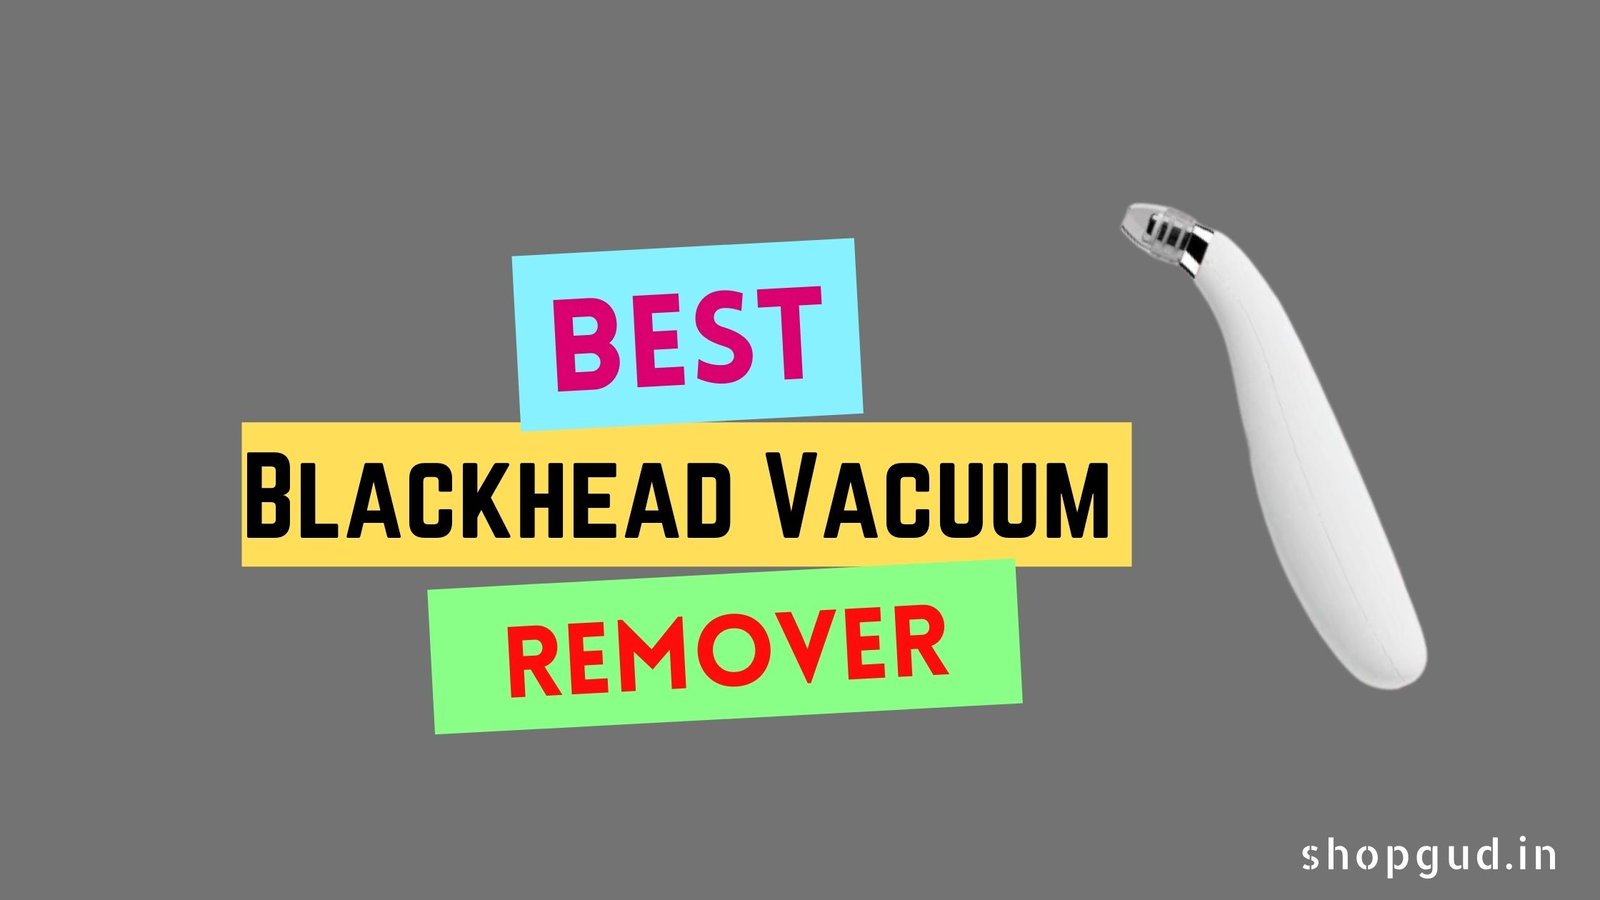 Best blackhead vacuum remover